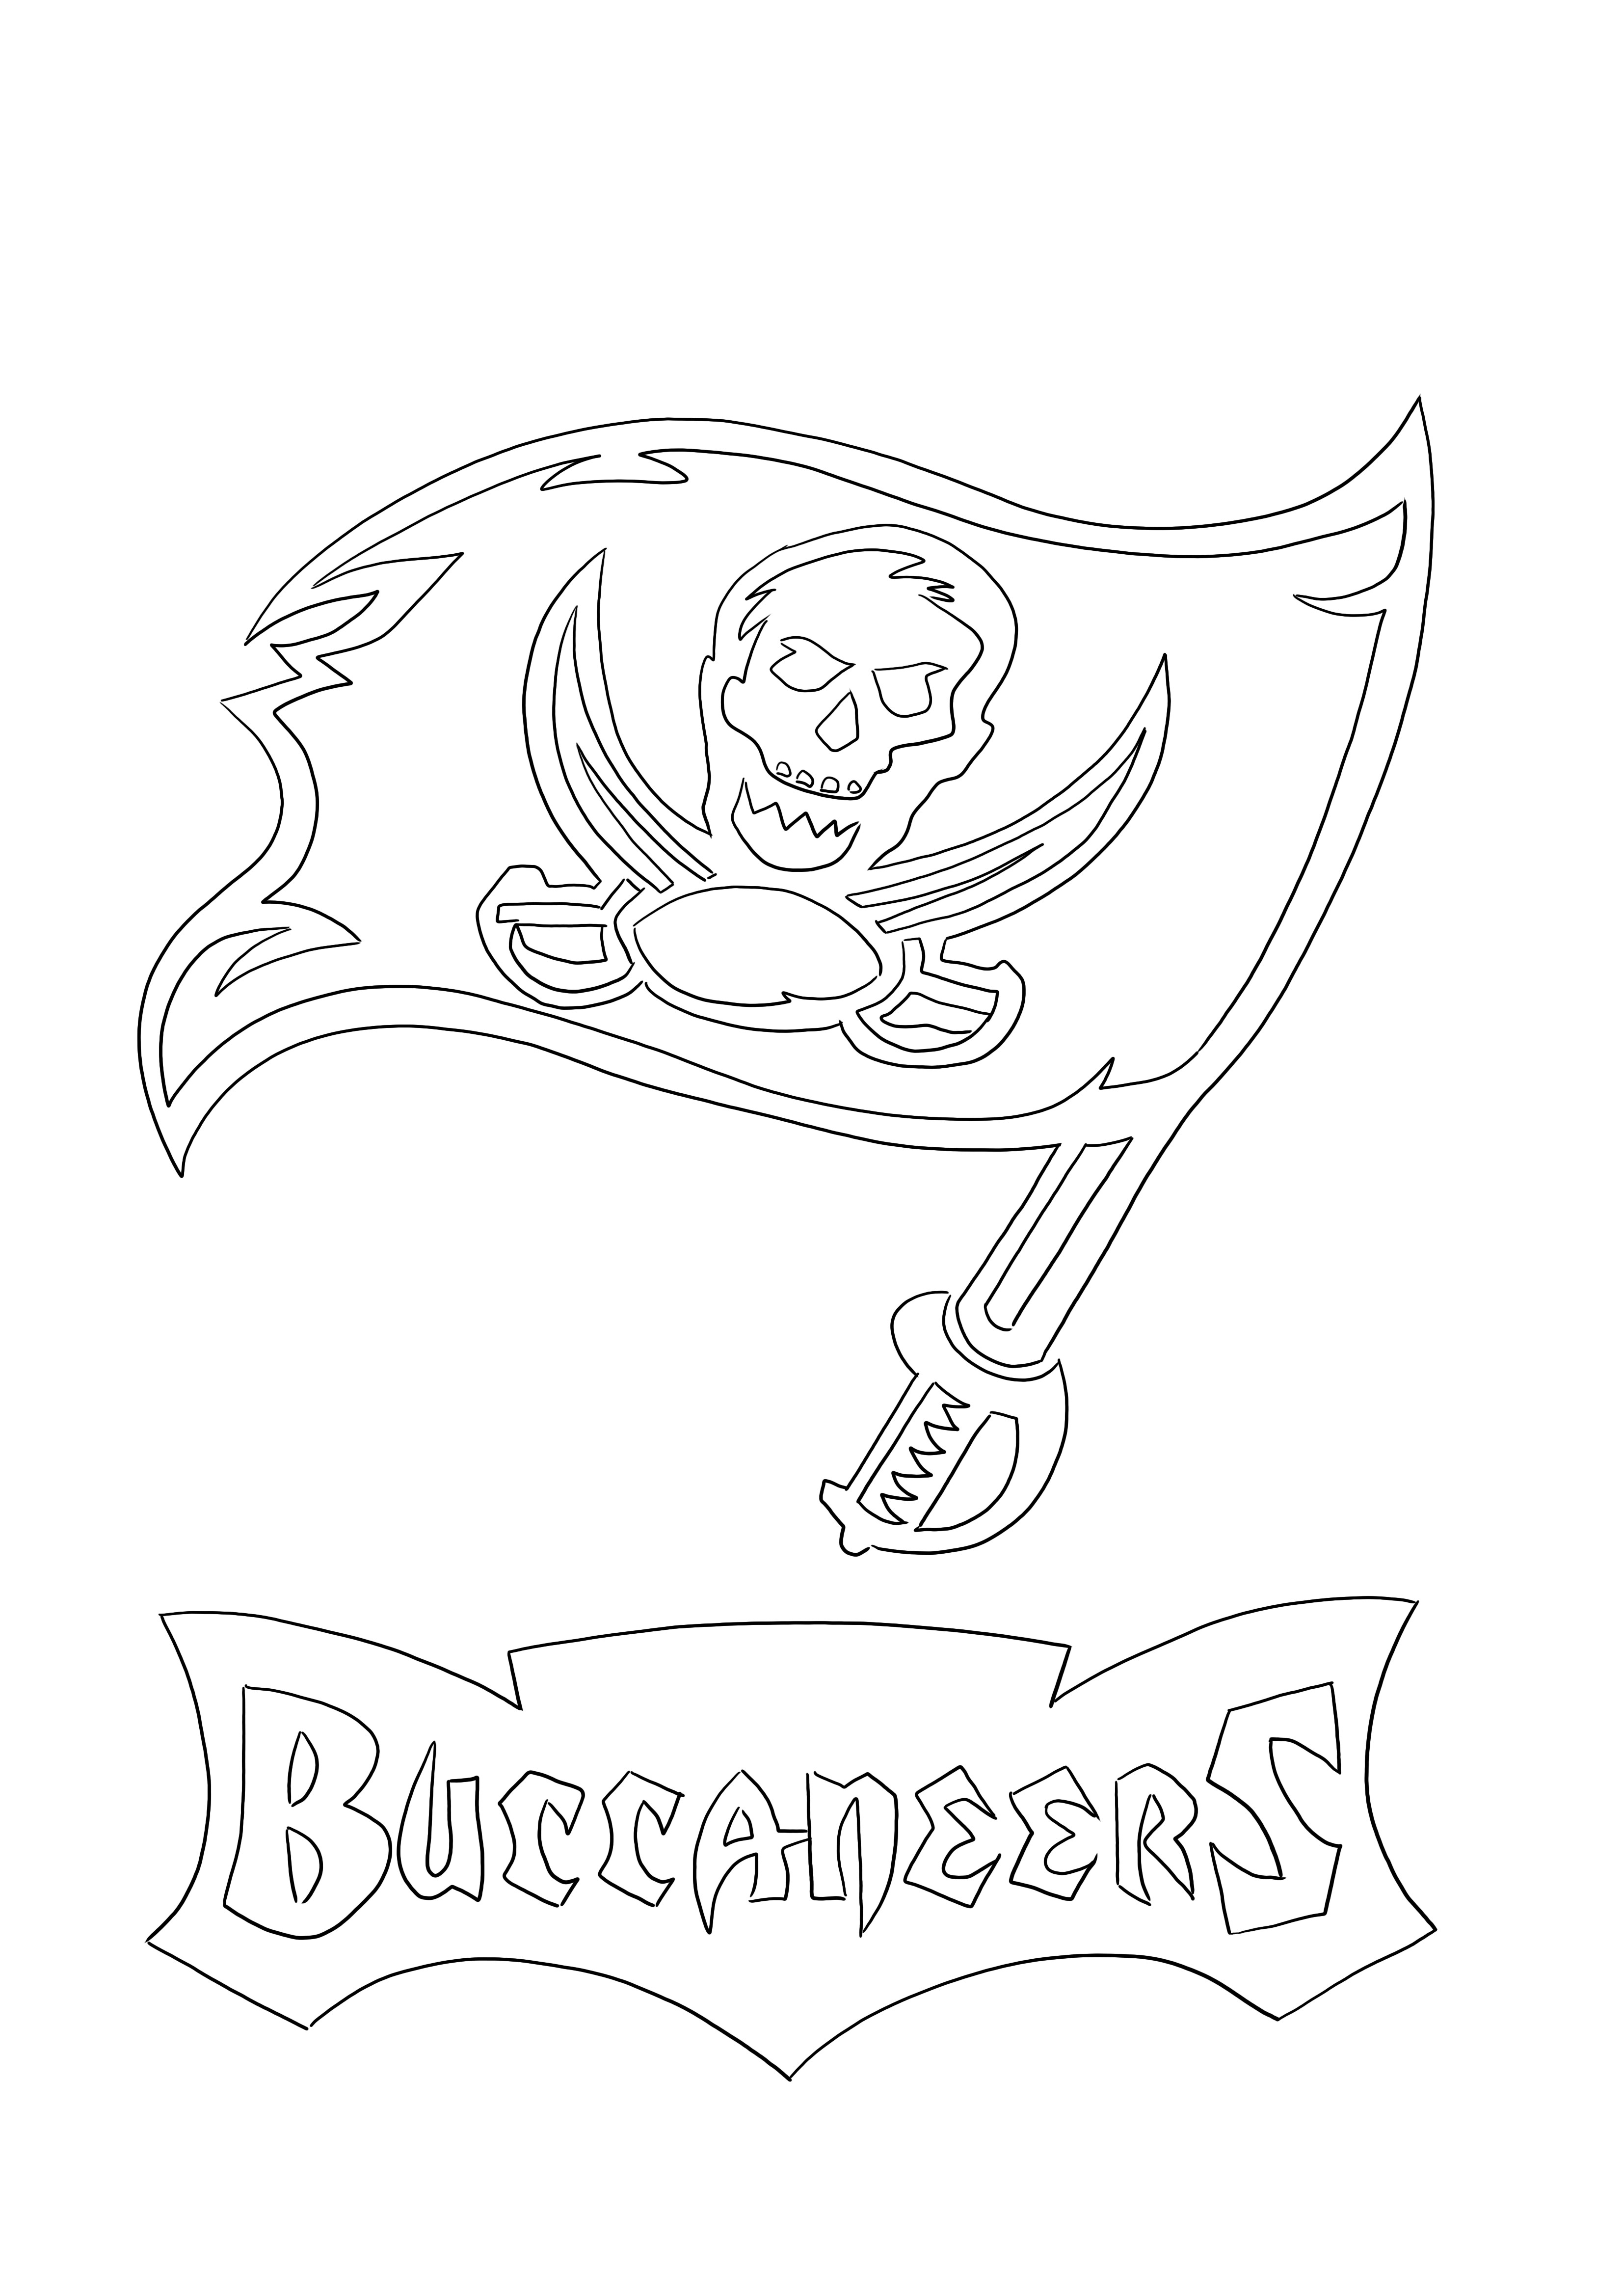 Kleurplaat Tampa Bay Buccaneers-logo gratis te printen of te downloaden voor kinderen kleurplaat